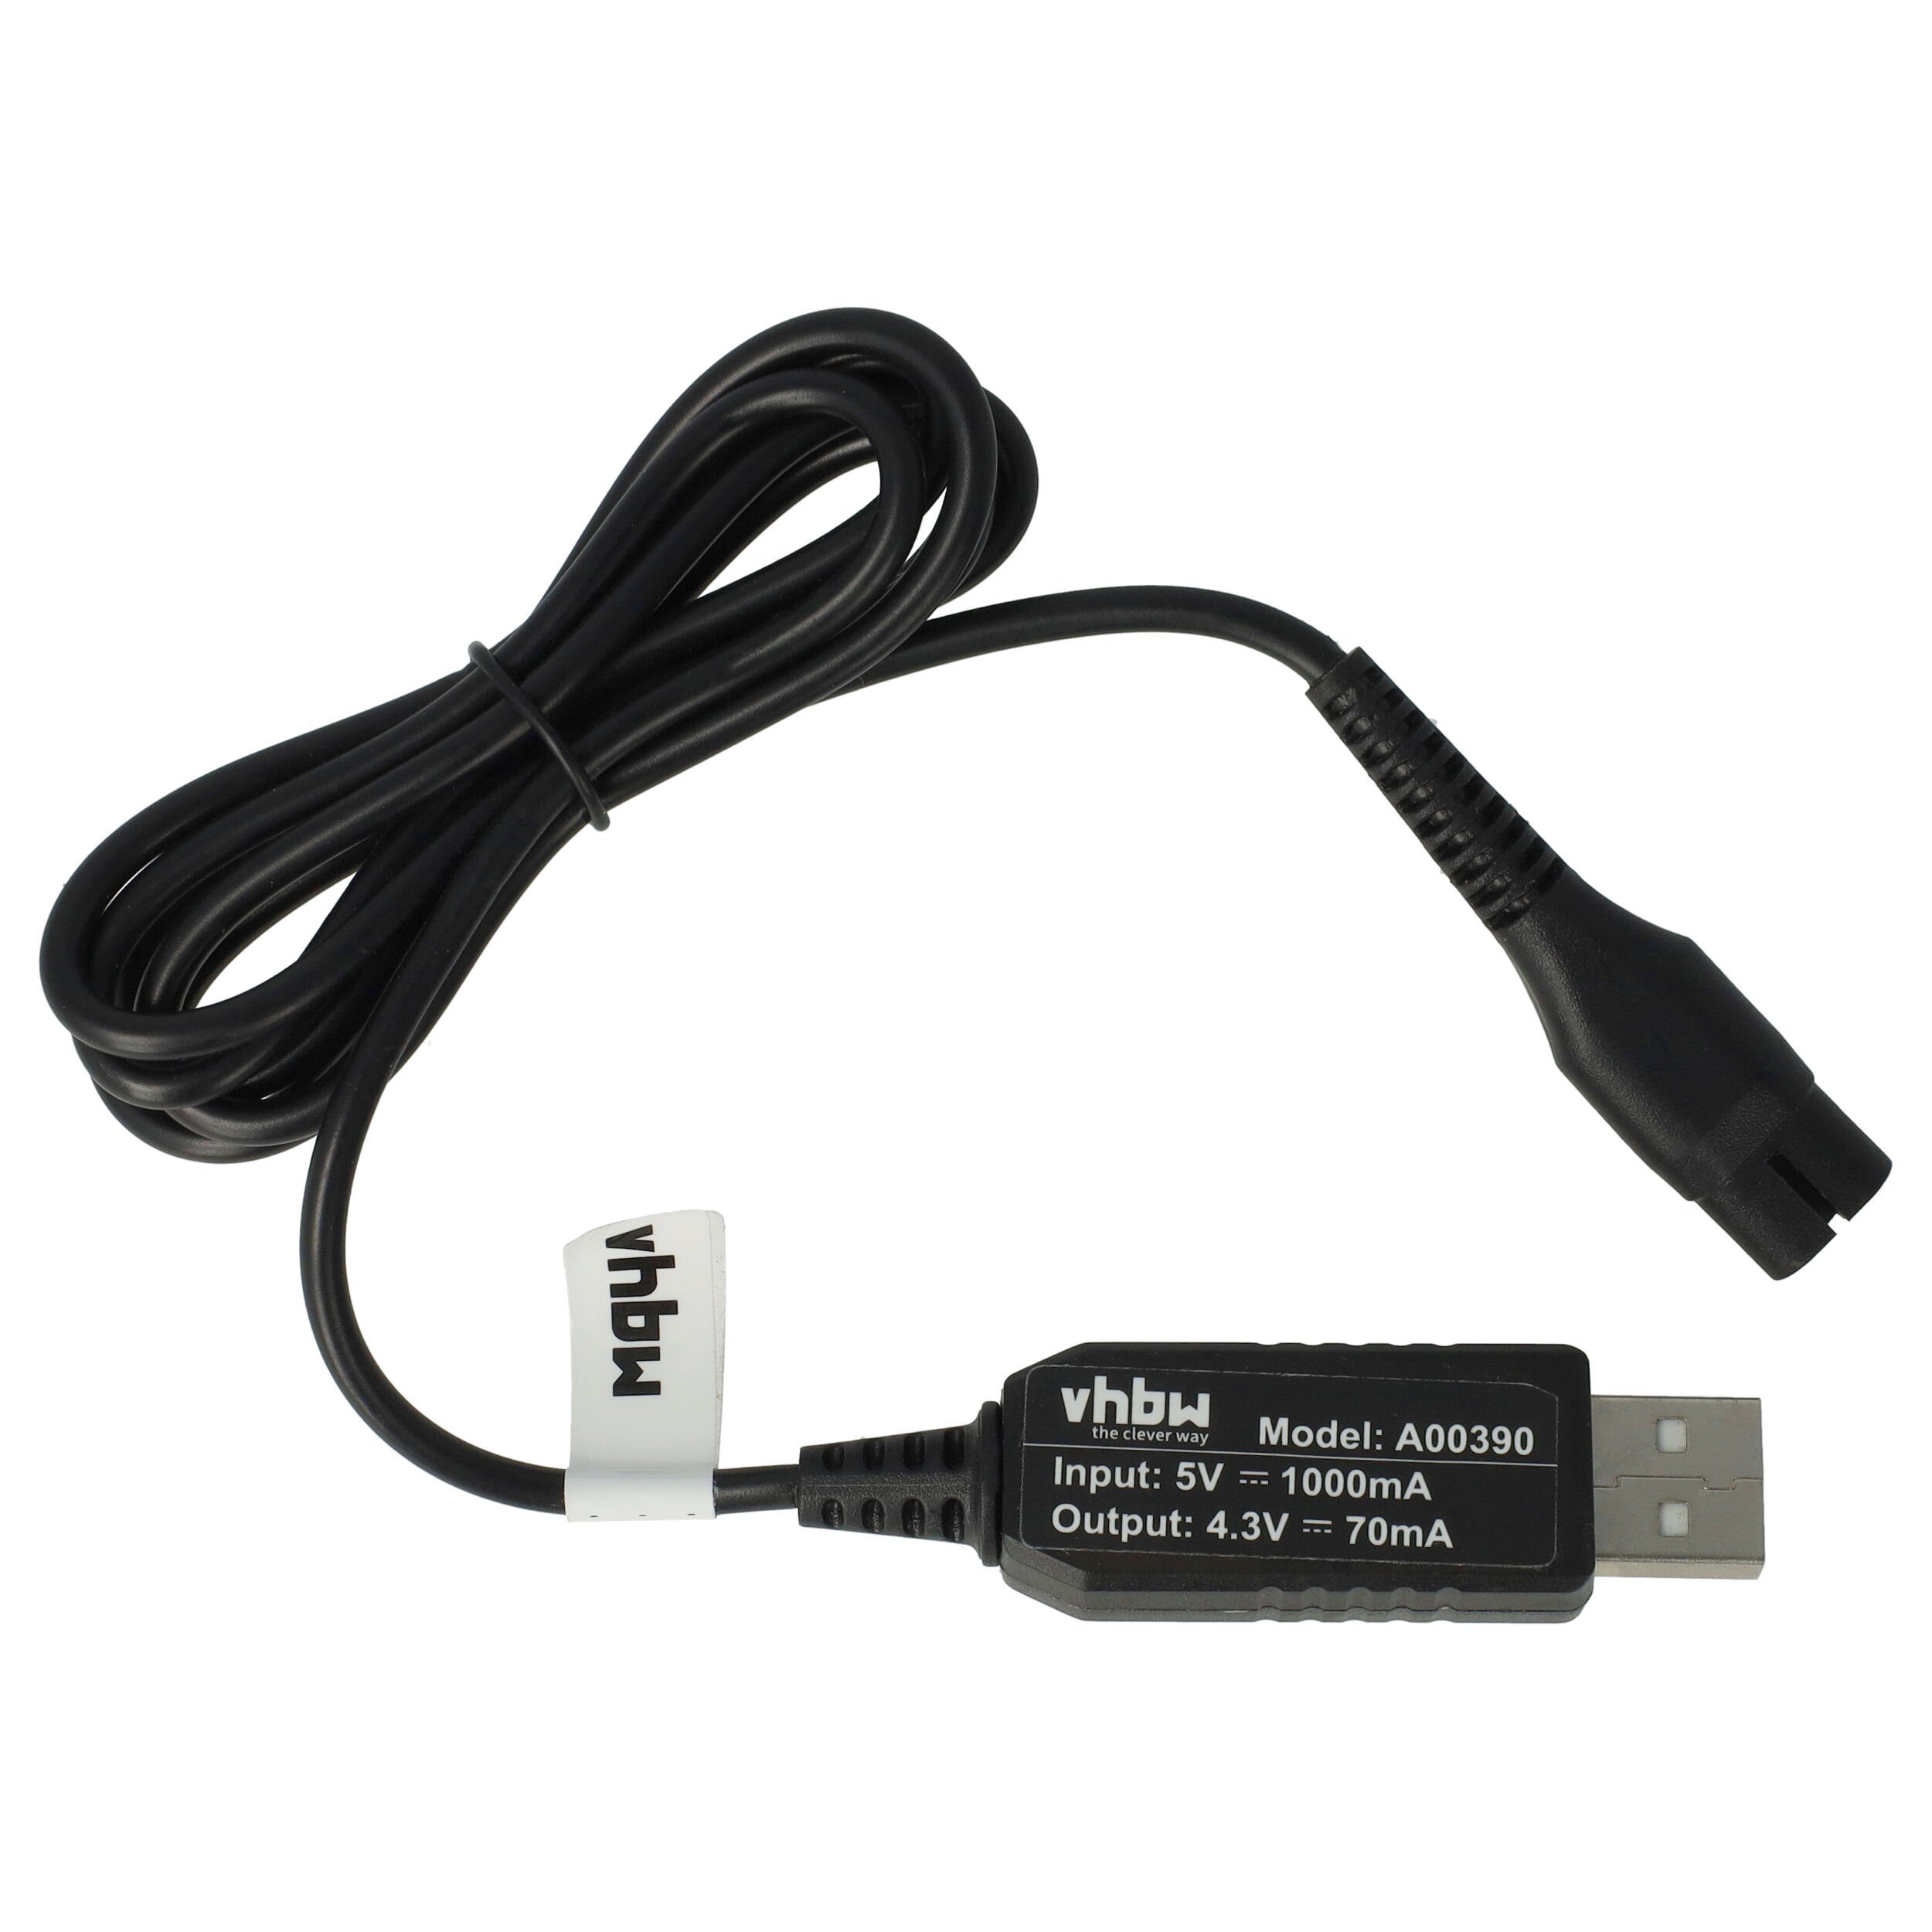 QP2520/30, passend Elektro-Kabel Philips MG5750, vhbw QP2520/20, für BT3205/15,